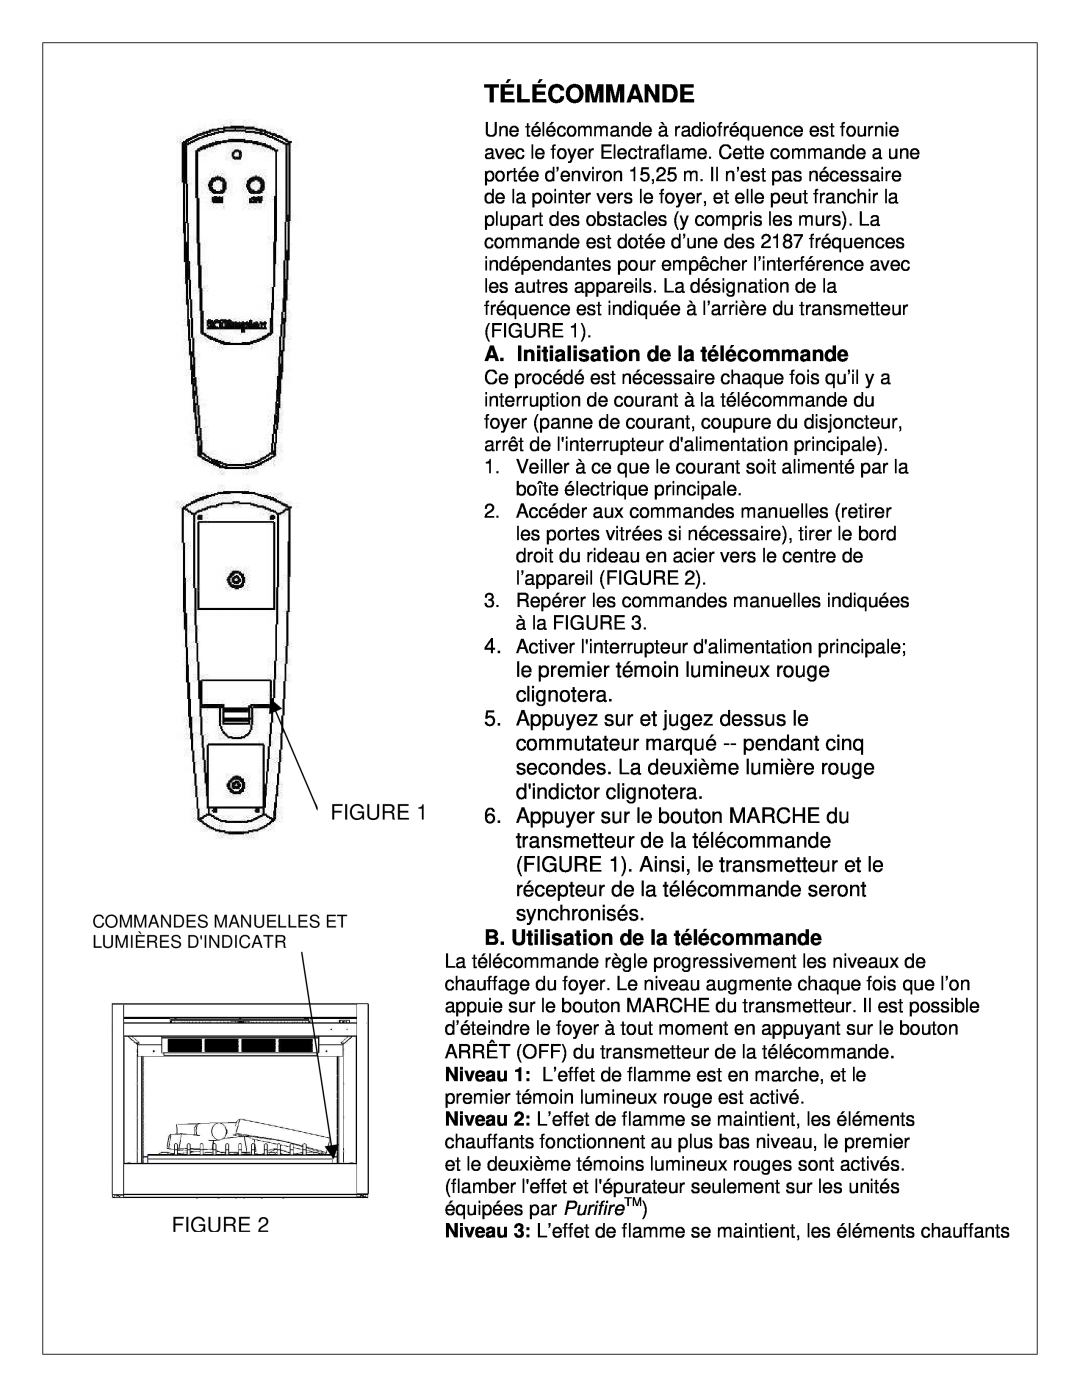 Dimplex 7206620100R02 manual Télécommande, A. Initialisation de la télécommande, B. Utilisation de la télécommande 